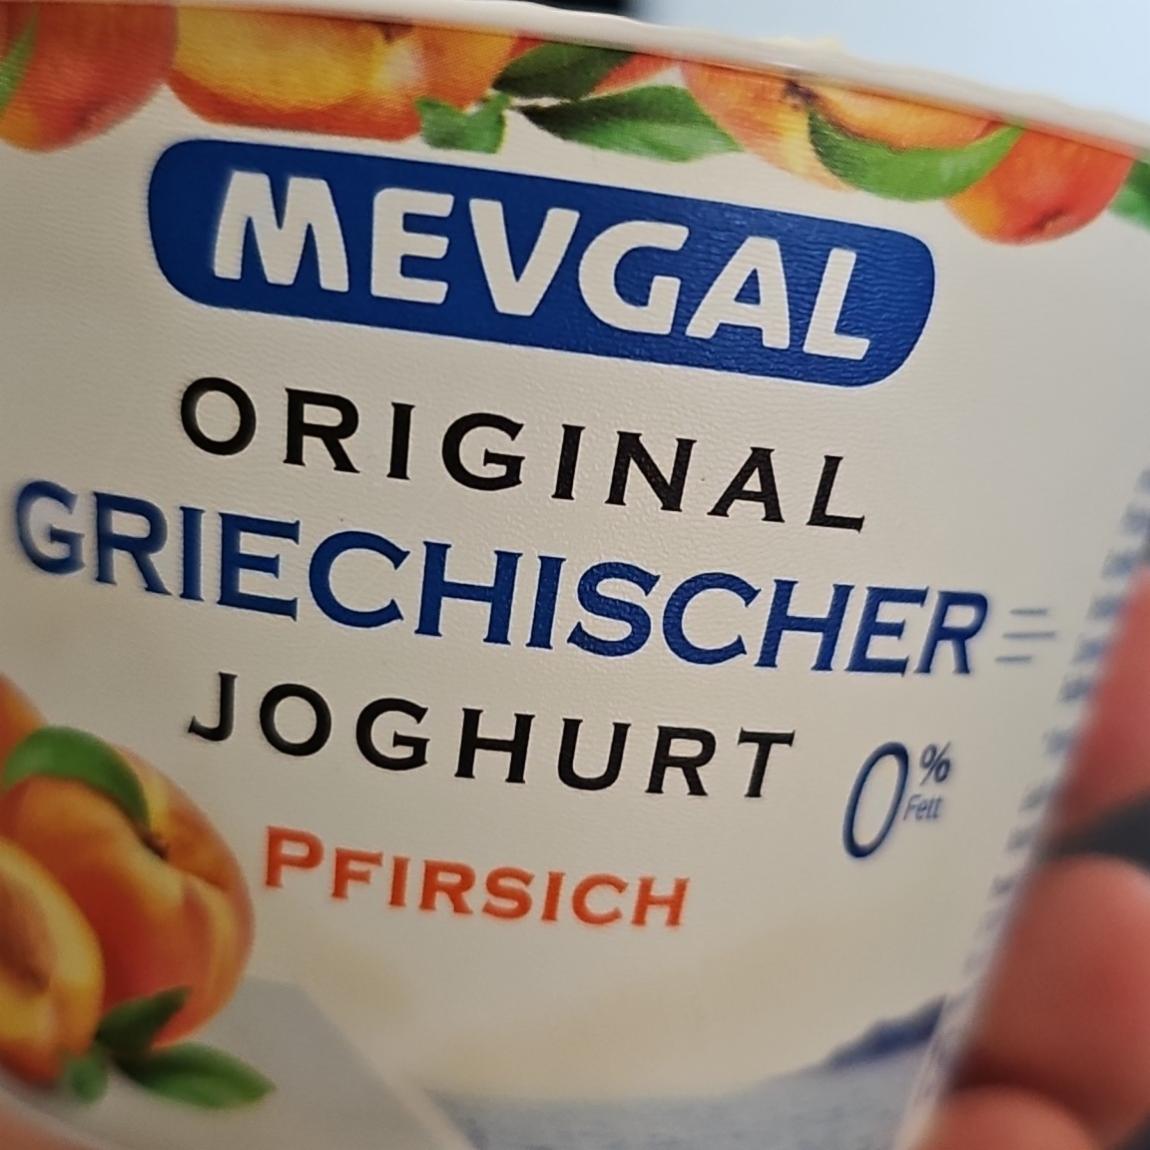 Fotografie - Original Griechischer Joghurt 0% Fett Pfirsich Mevgal